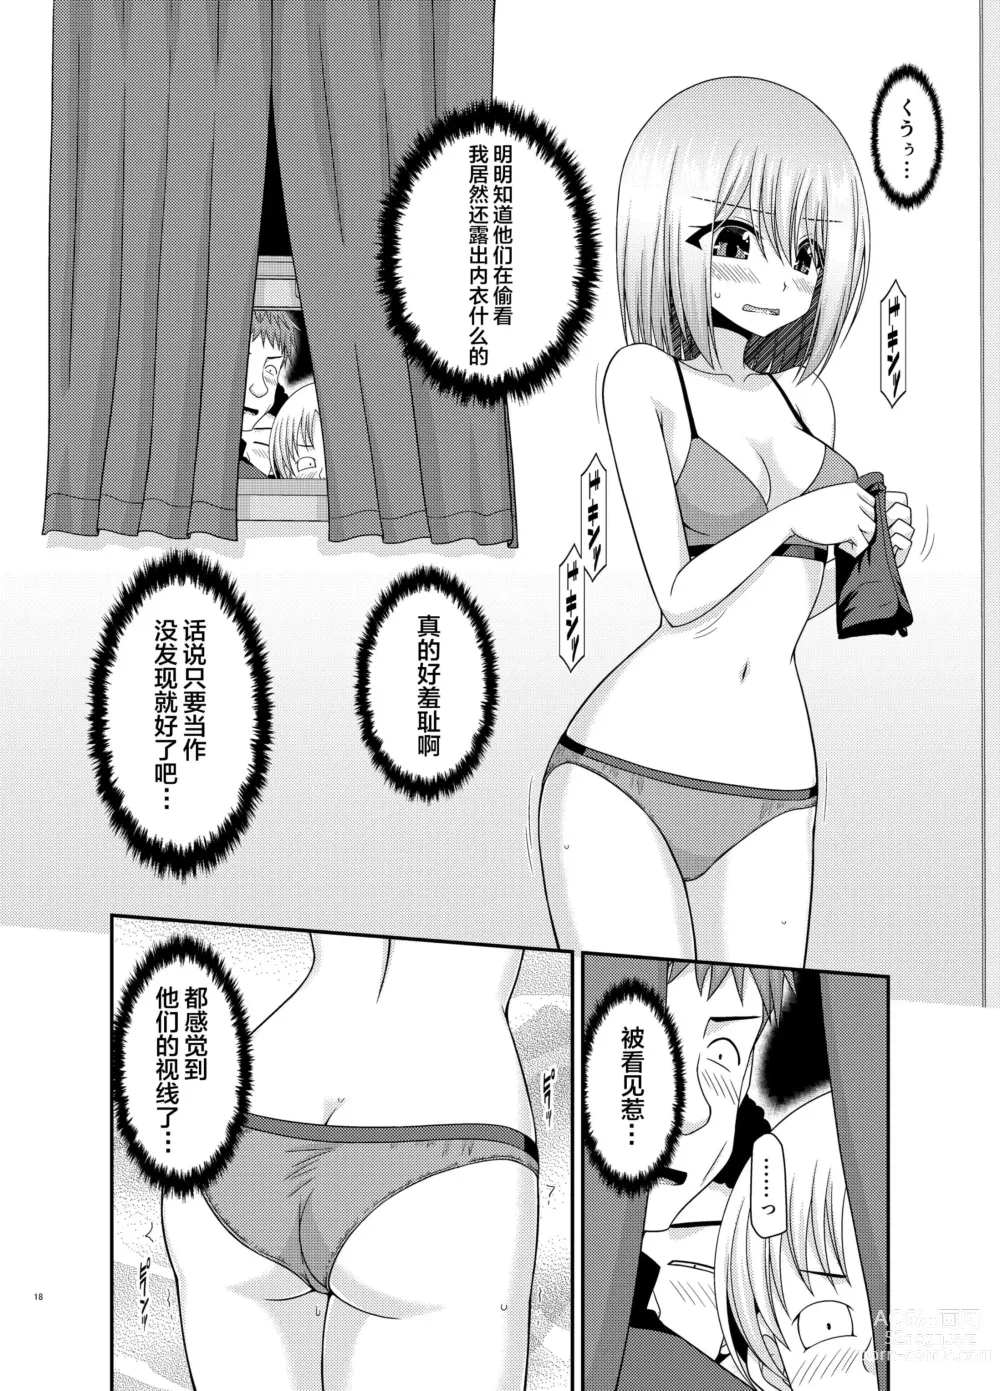 Page 15 of manga Nozokare Roshutsu Shoujo